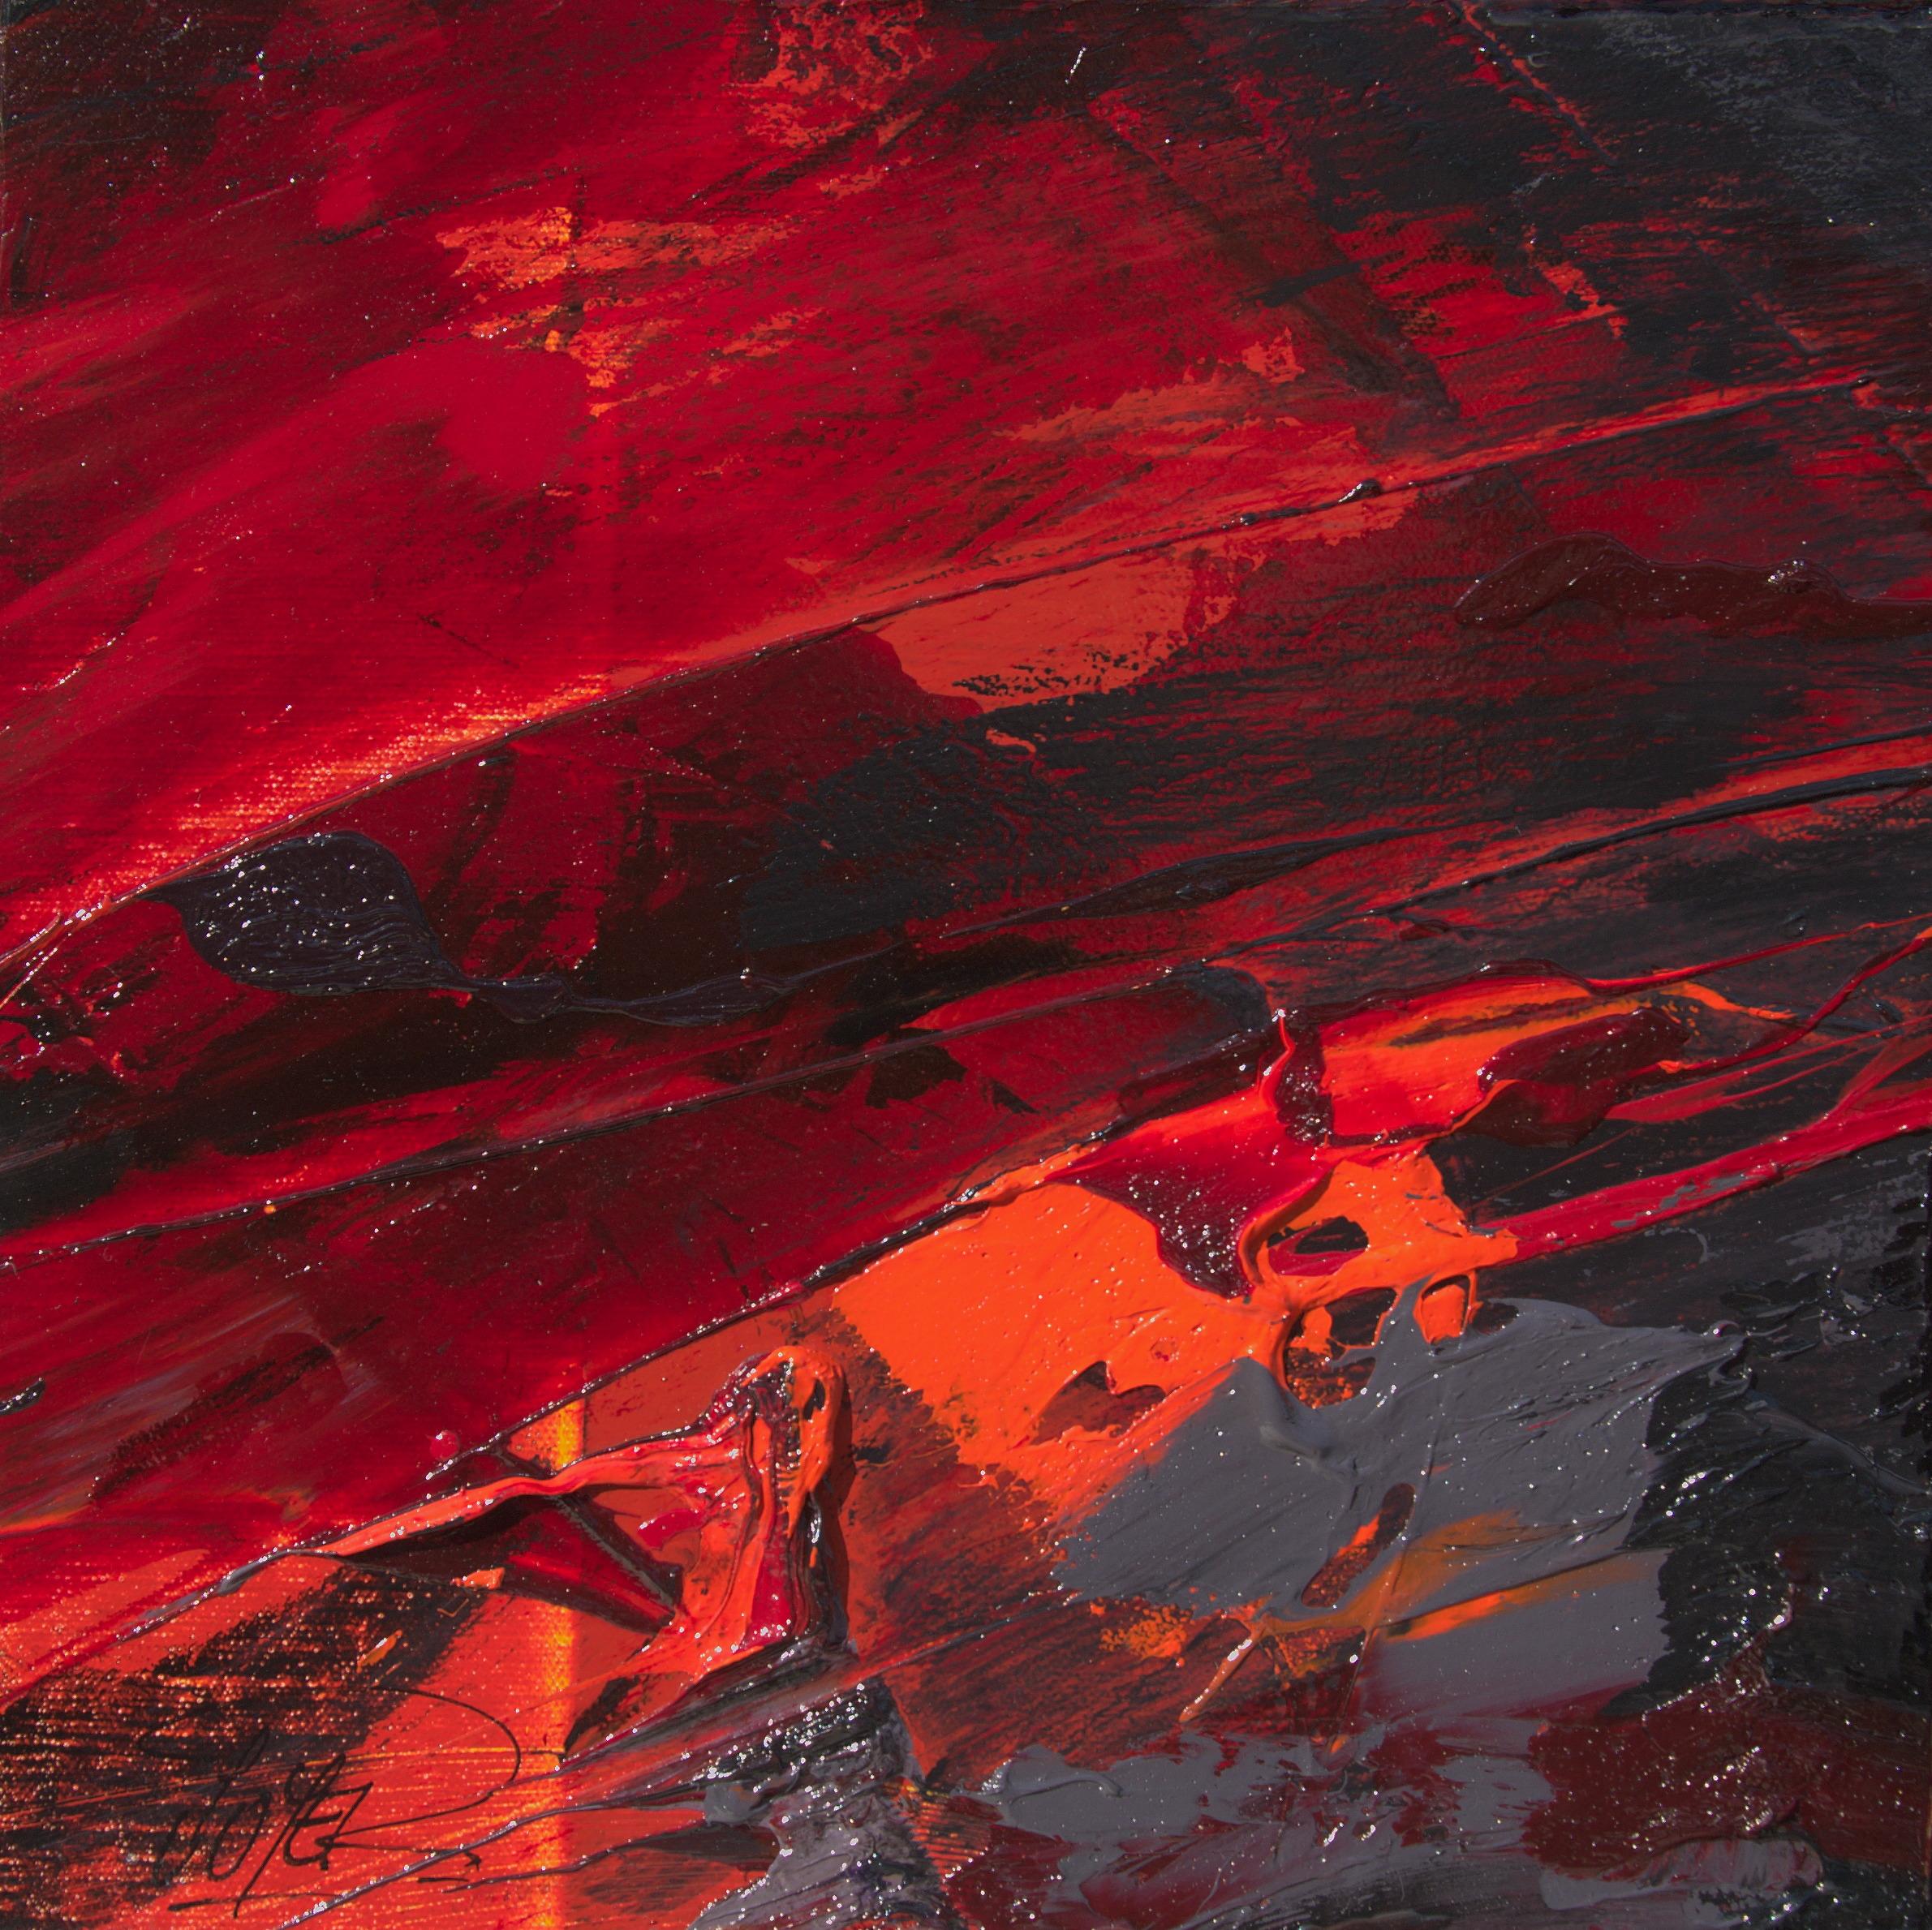 Abstract Painting Jean Soyer - Petite peinture à l'huile abstraite carrée rouge foncé, orange, noir et gris